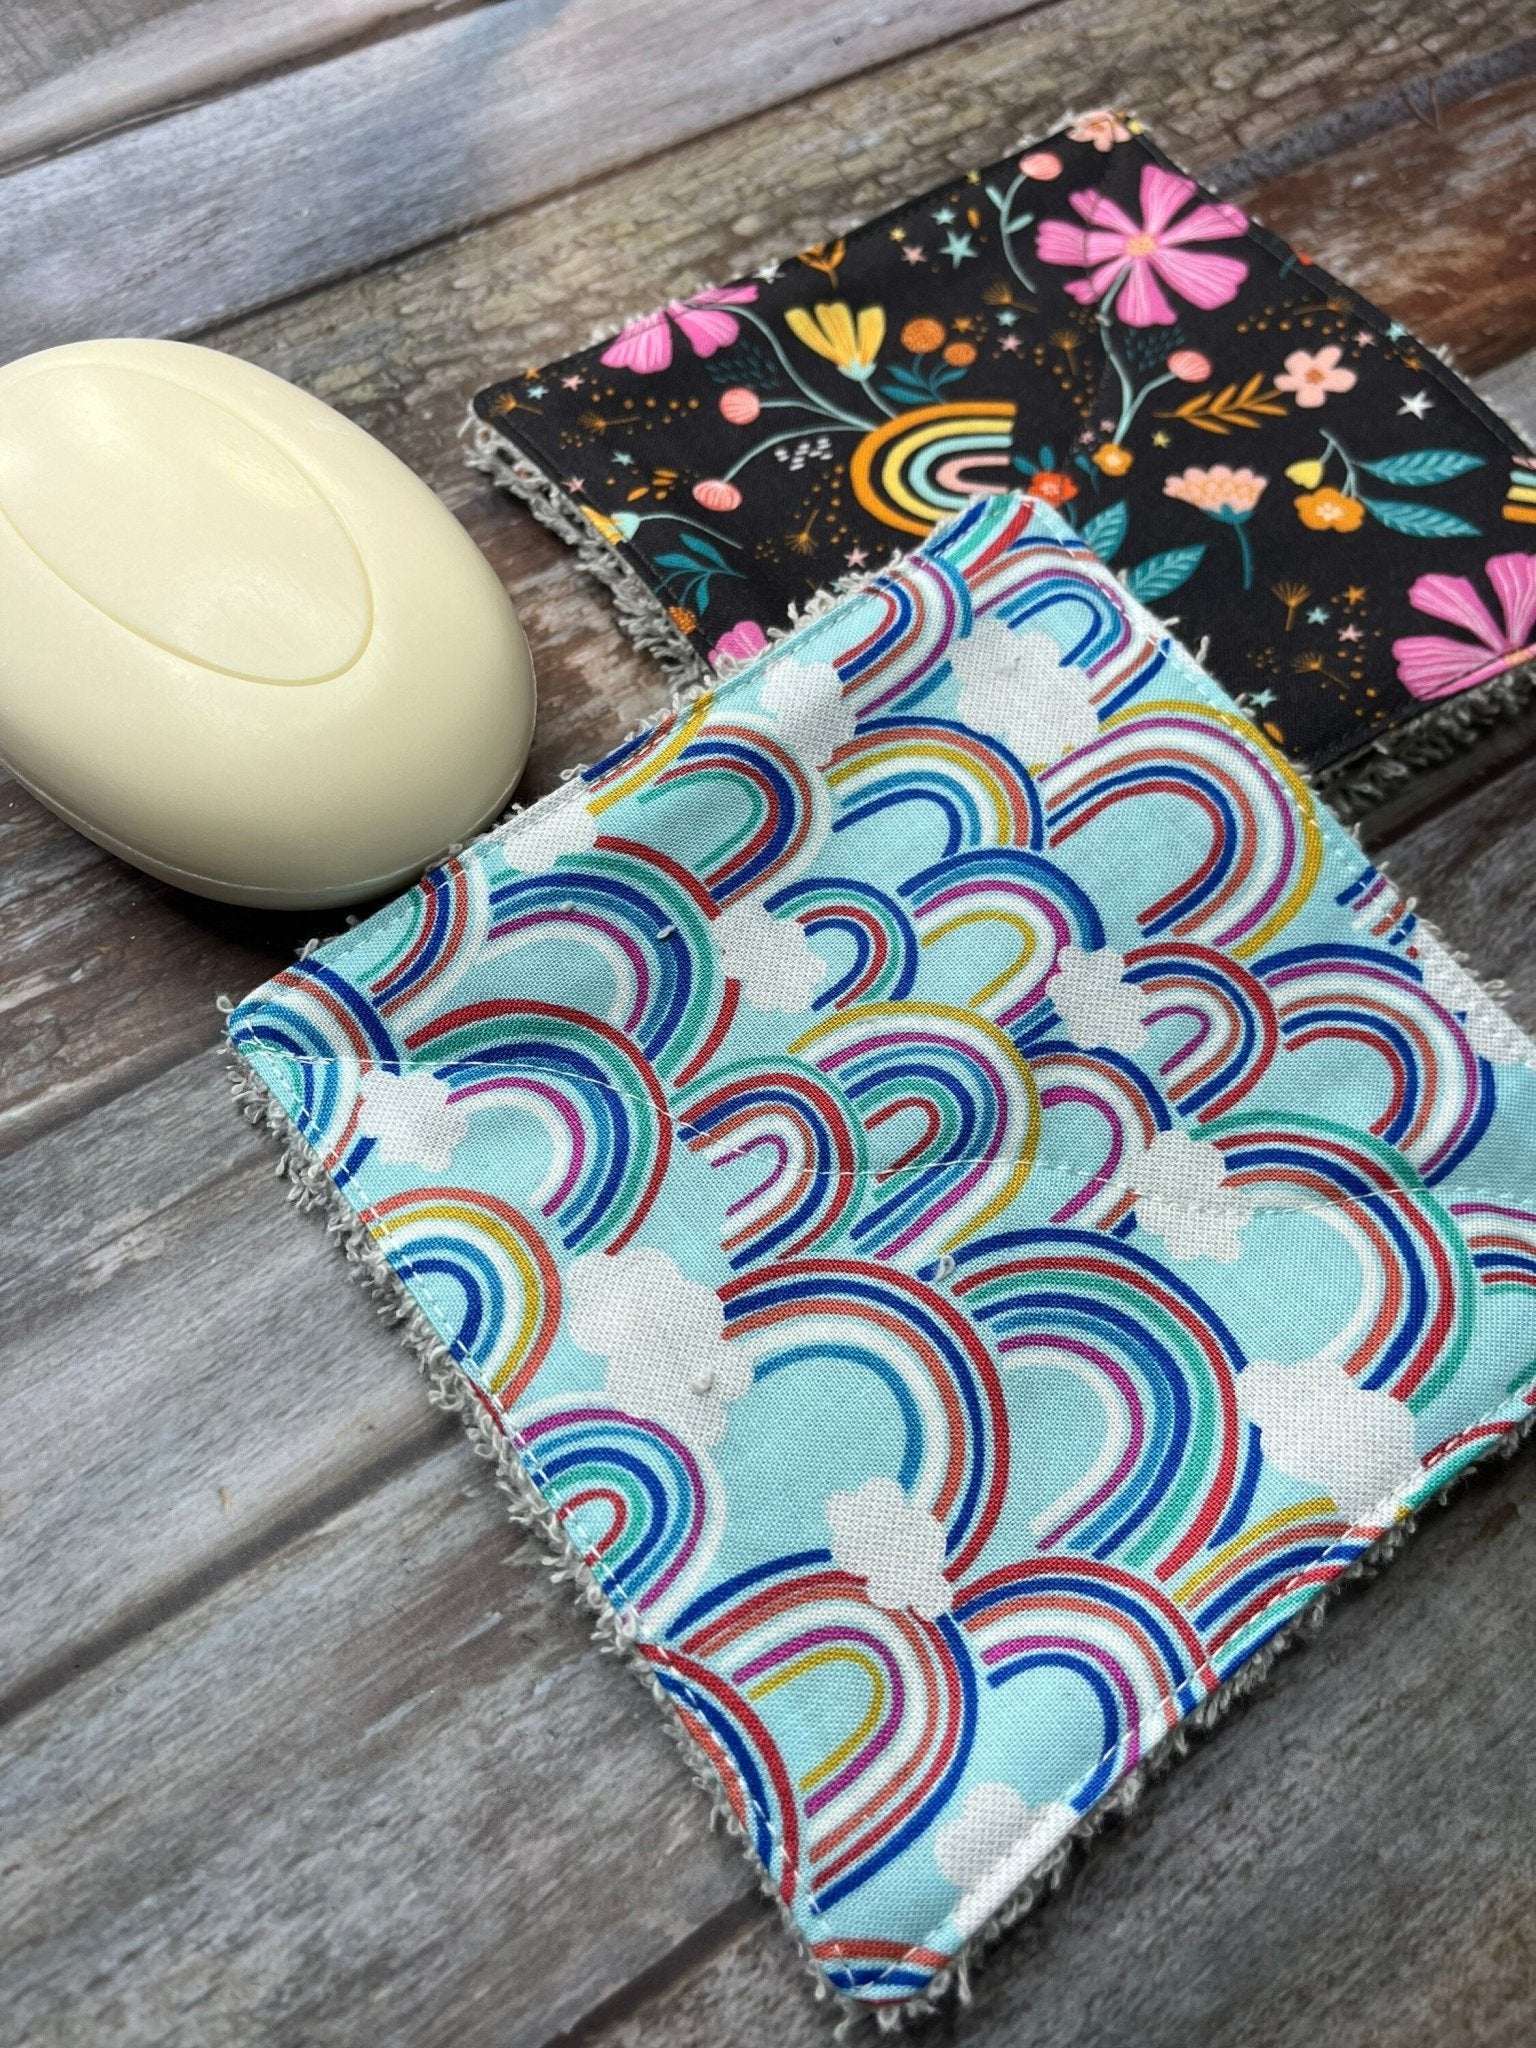 Rainbow Reusable Cotton Pads, Reusable Make Up Wipes, Reusable Cotton Baby Wipes, Rainbow Gift - Uphouse Crafts